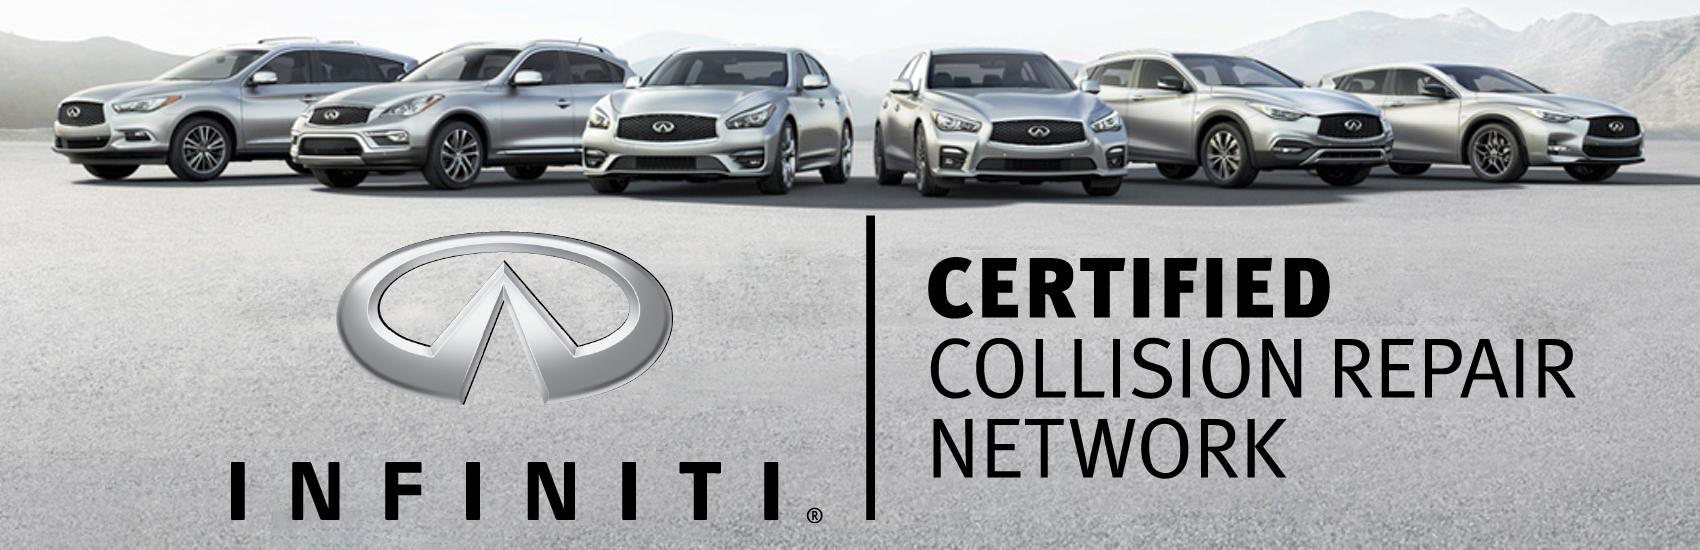  infiniti certified collision repair banner